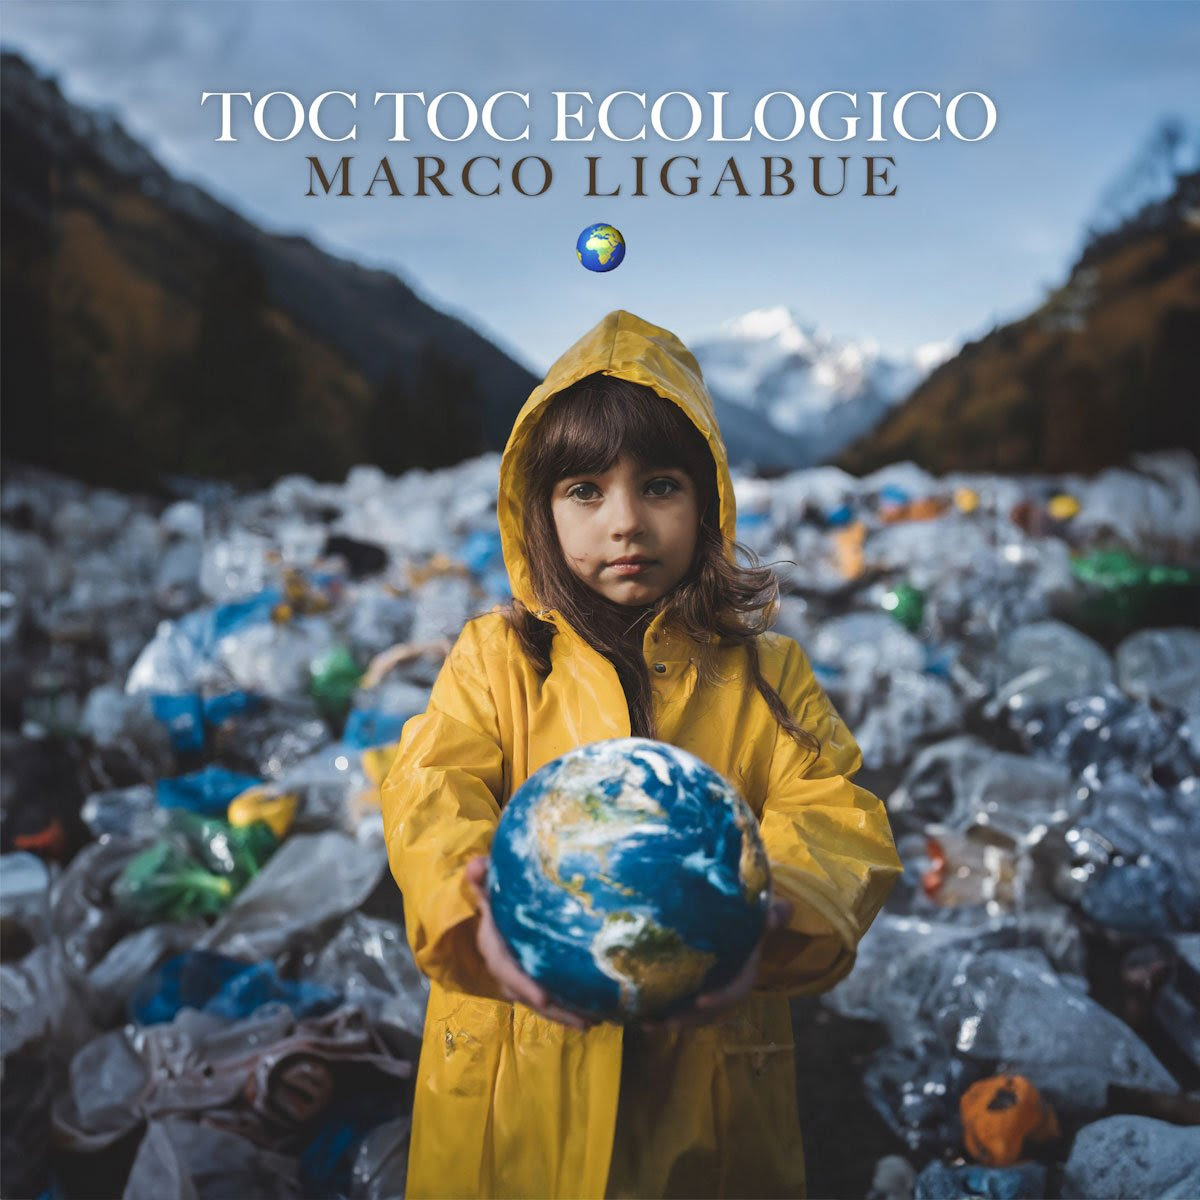 MARCO LIGABUE: oggi, in occasione della Giornata Mondiale della Terra, esce “TOC TOC ECOLOGICO”